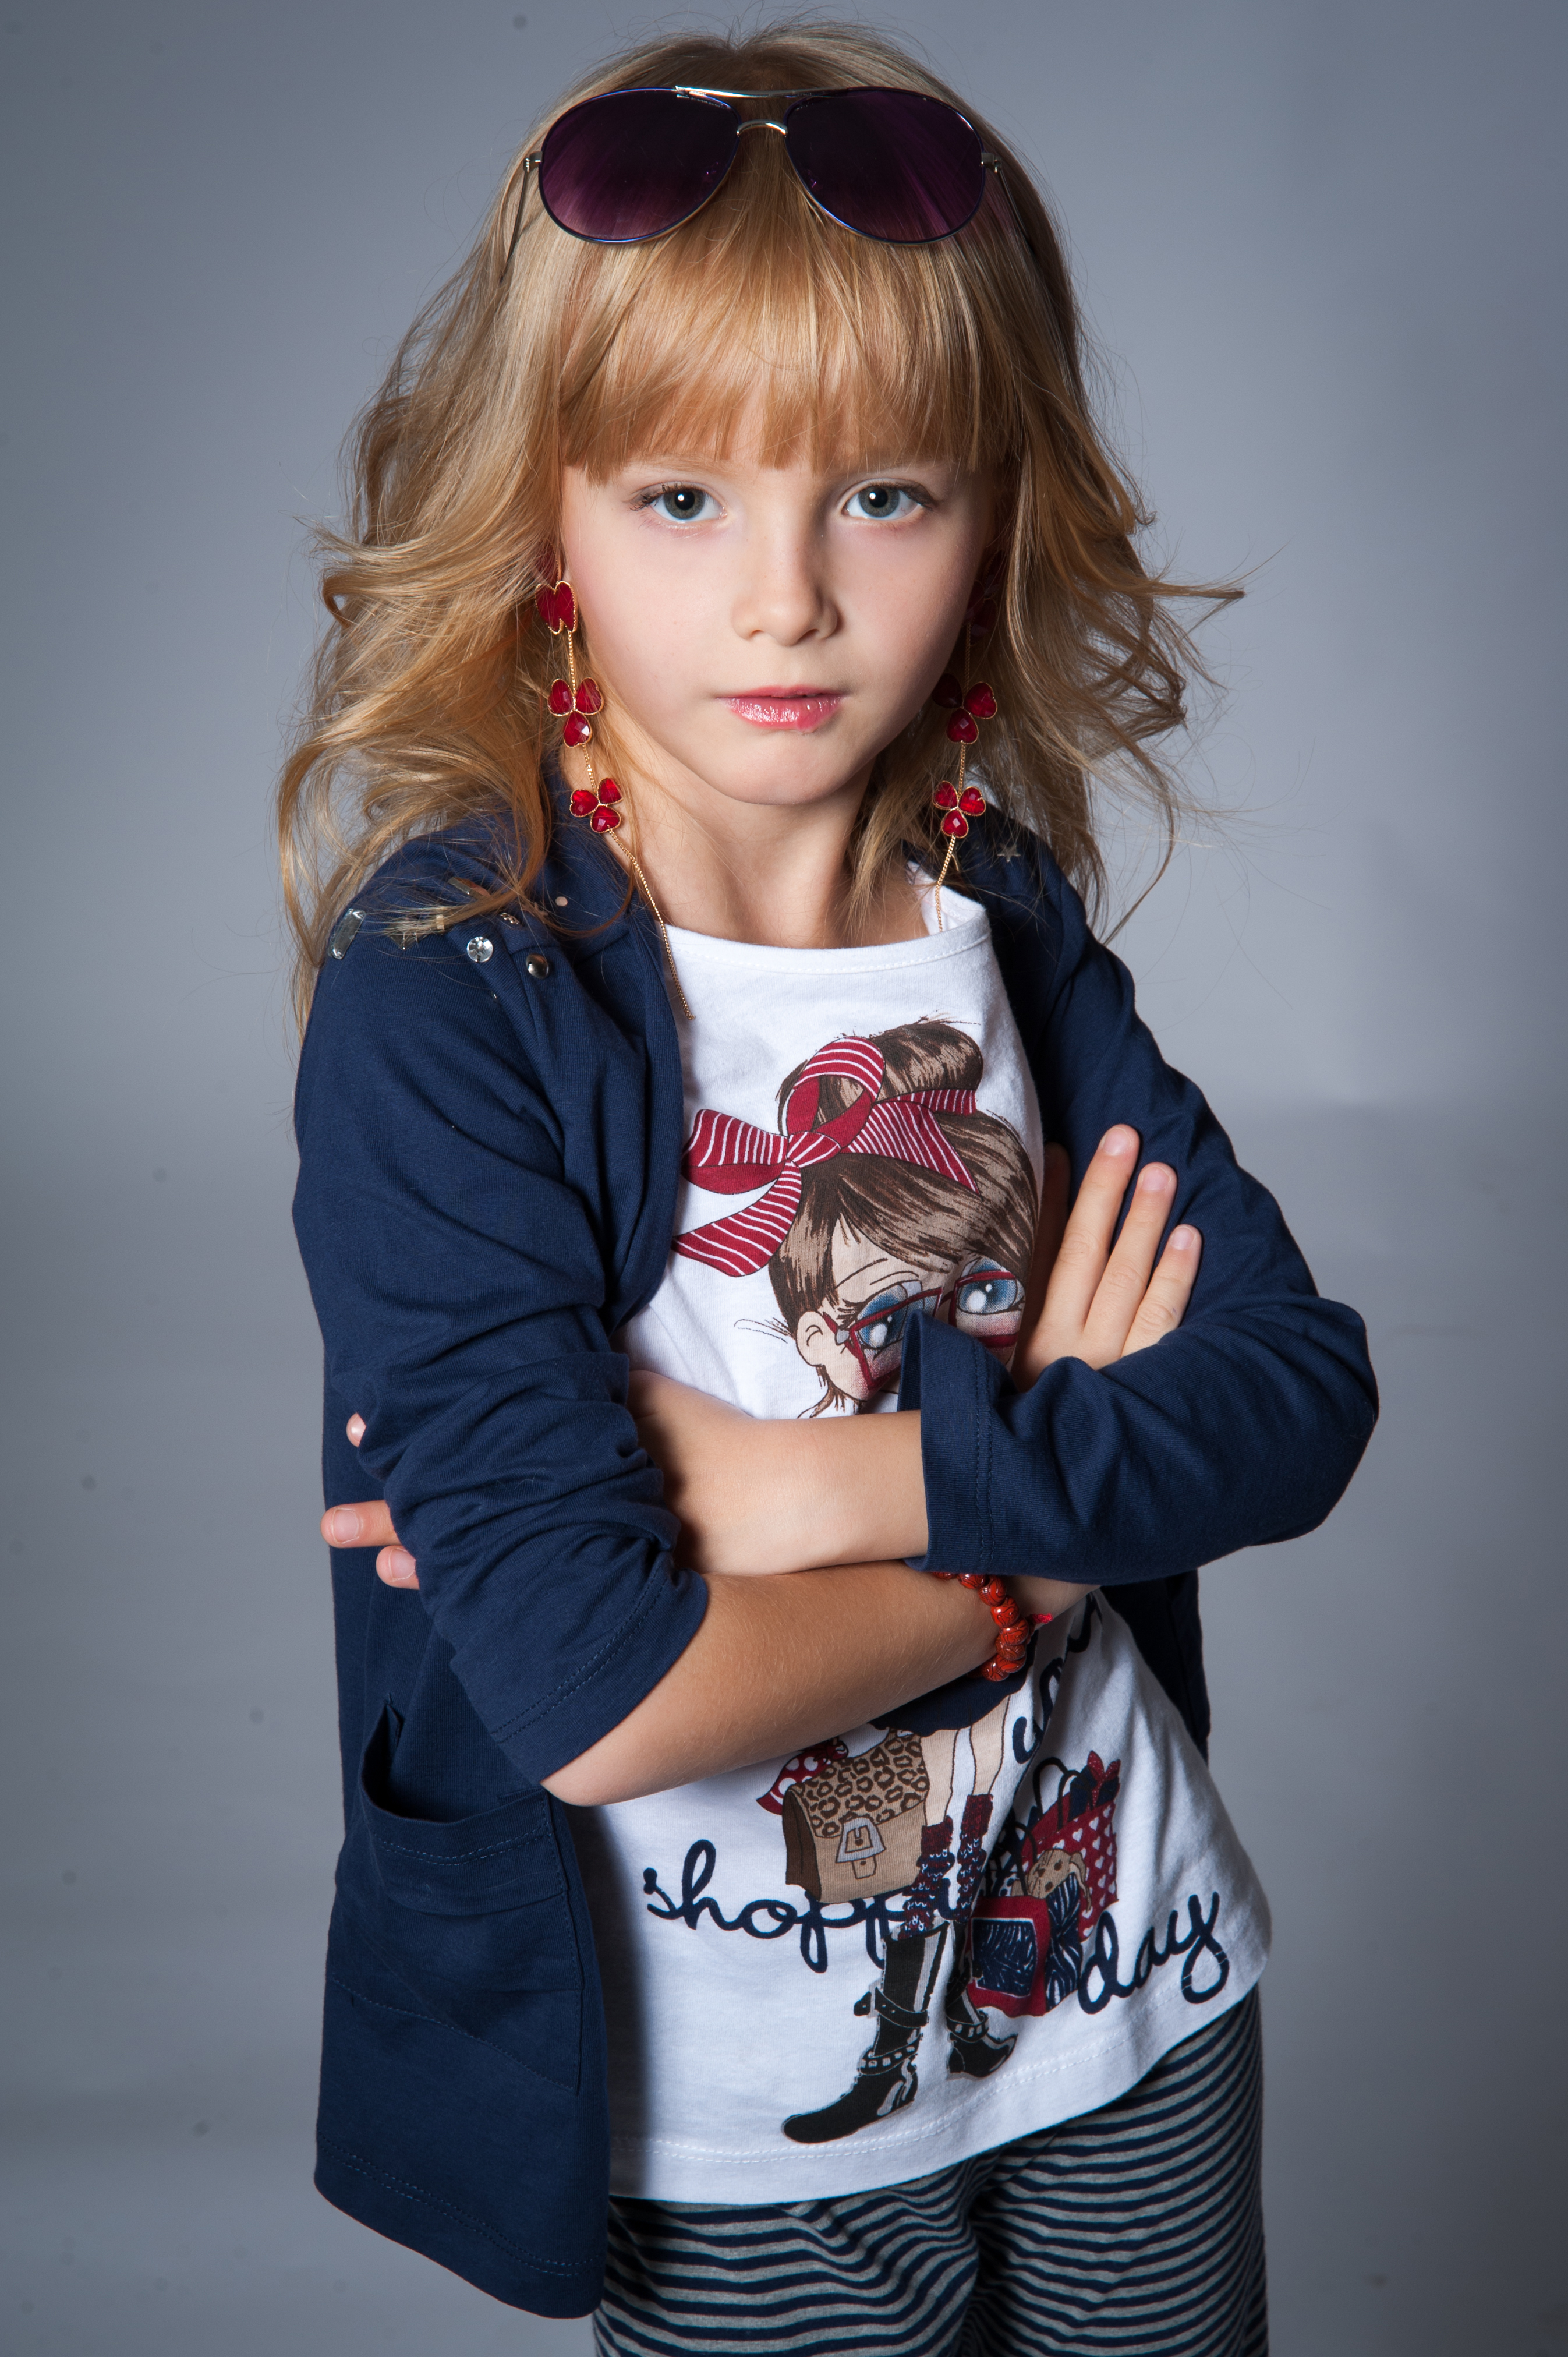 Лилия Малкова - аккредитованная модель для участия в подиумных показах на Междунродной Детской Неделе моды